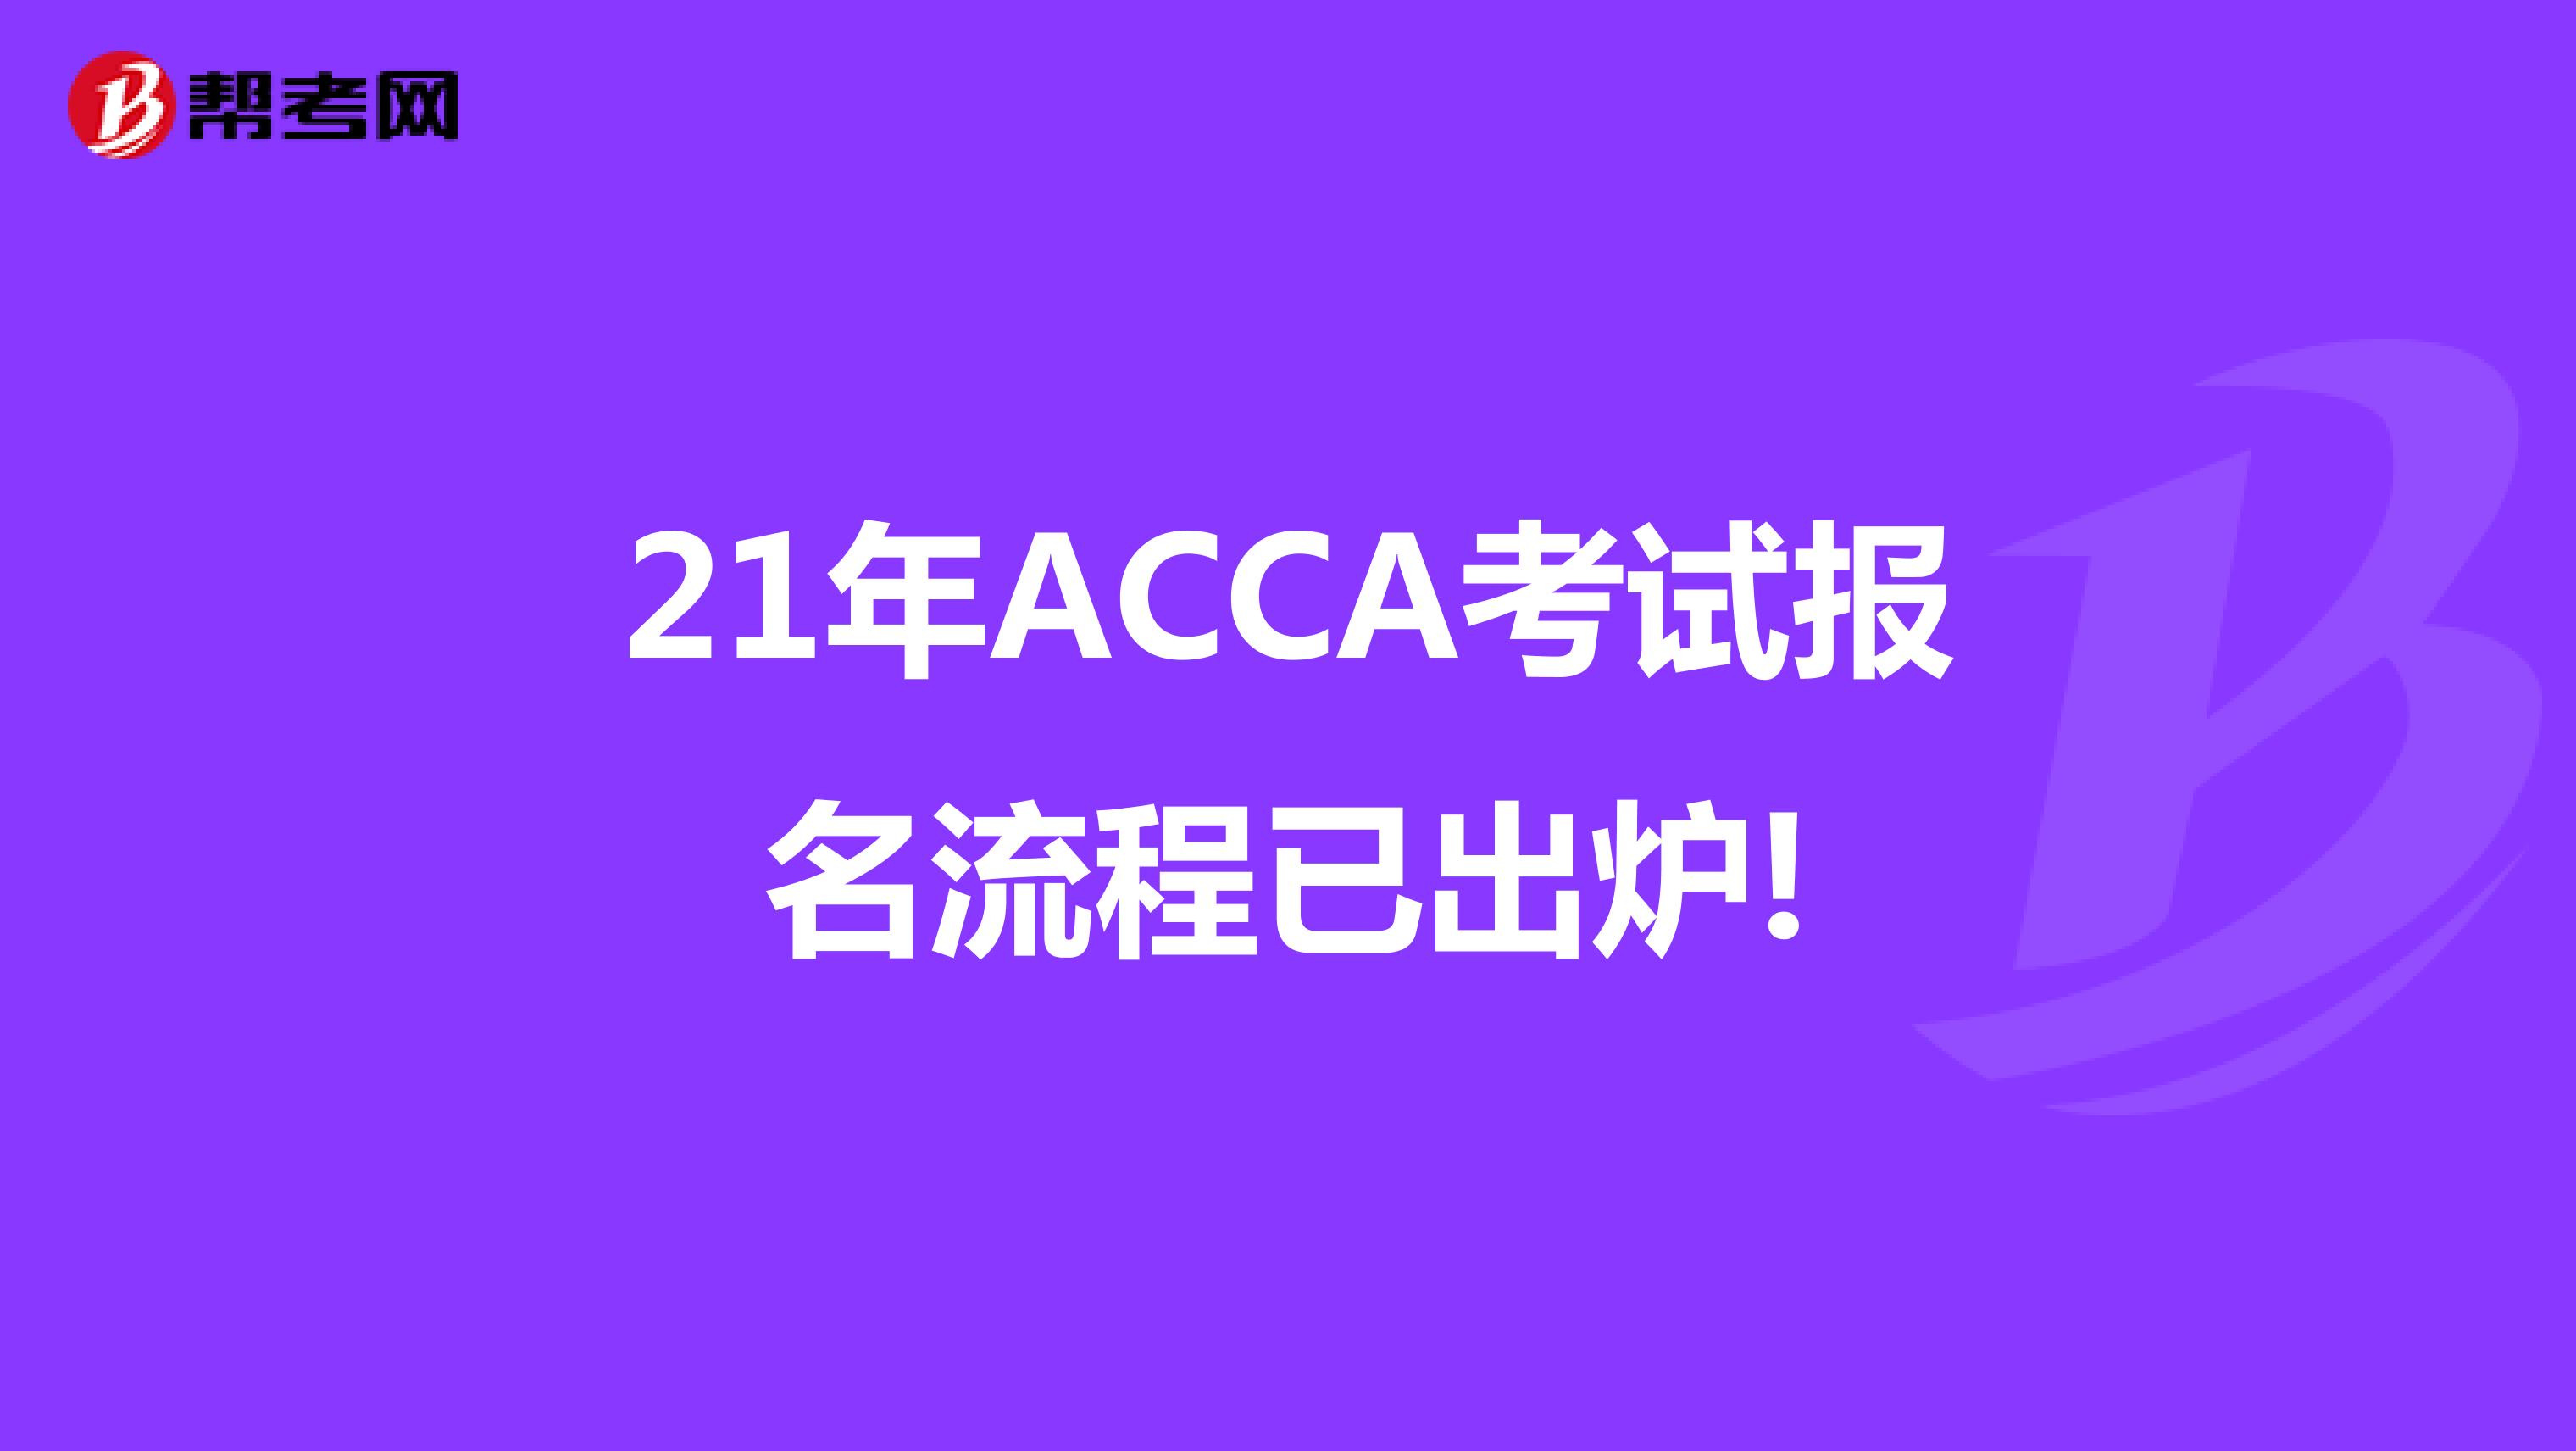 21年ACCA考试报名流程已出炉!